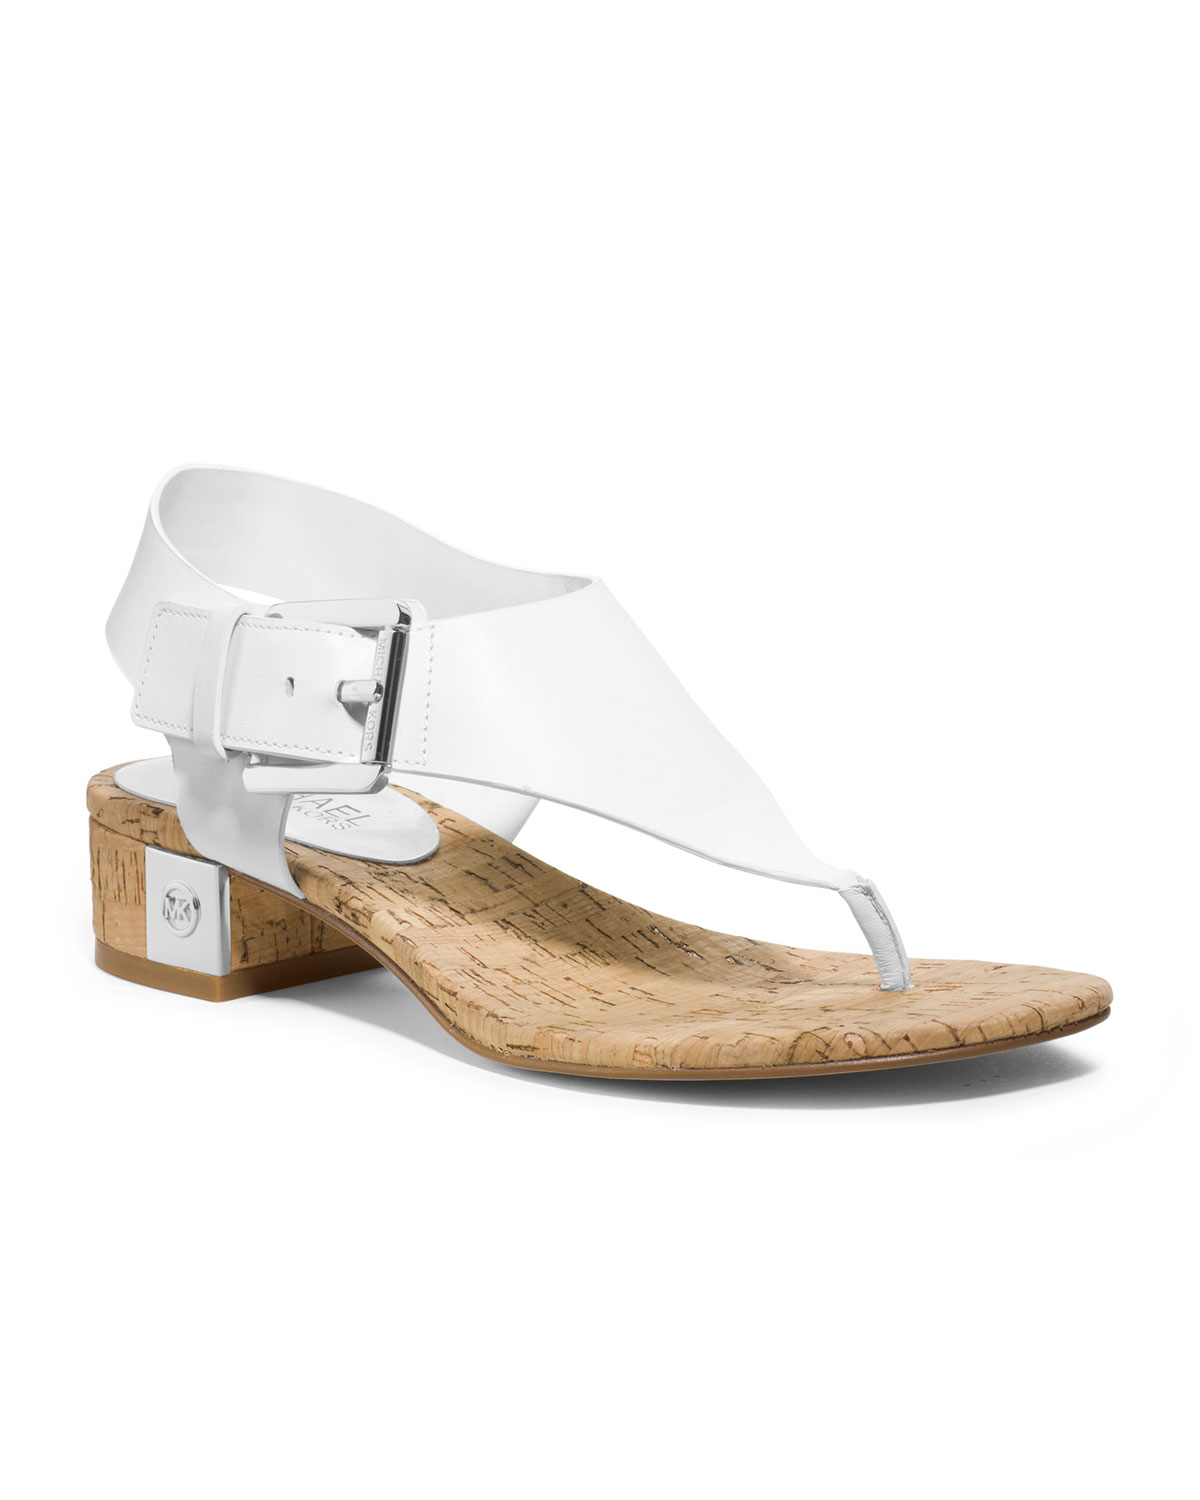 Michael Kors London Thong Sandal in White | Lyst